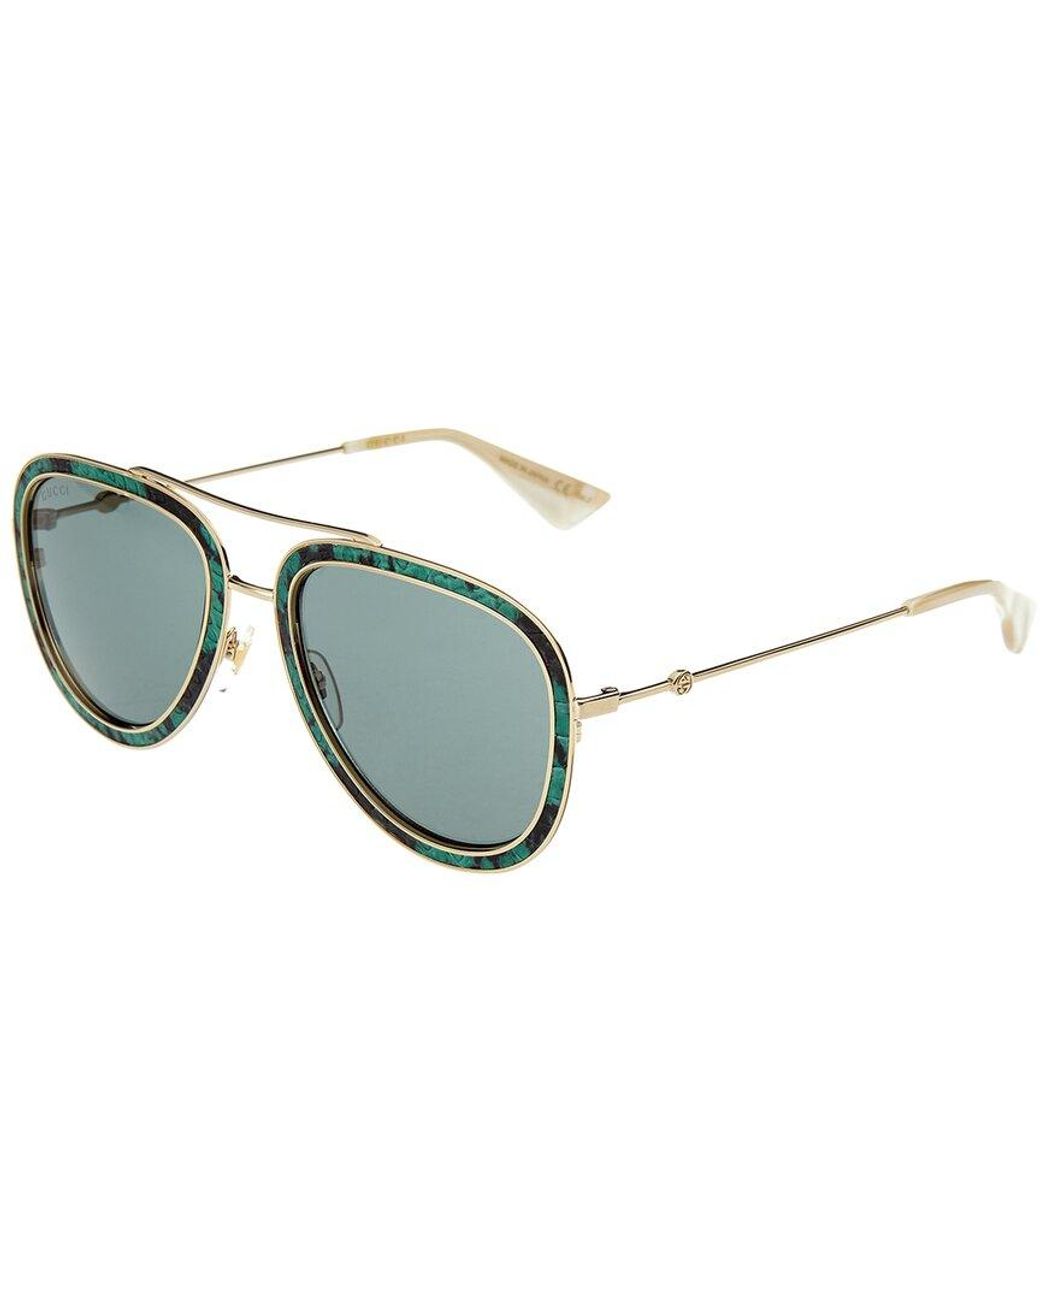 Gucci GG0062SLEA 55mm Sunglasses in Green